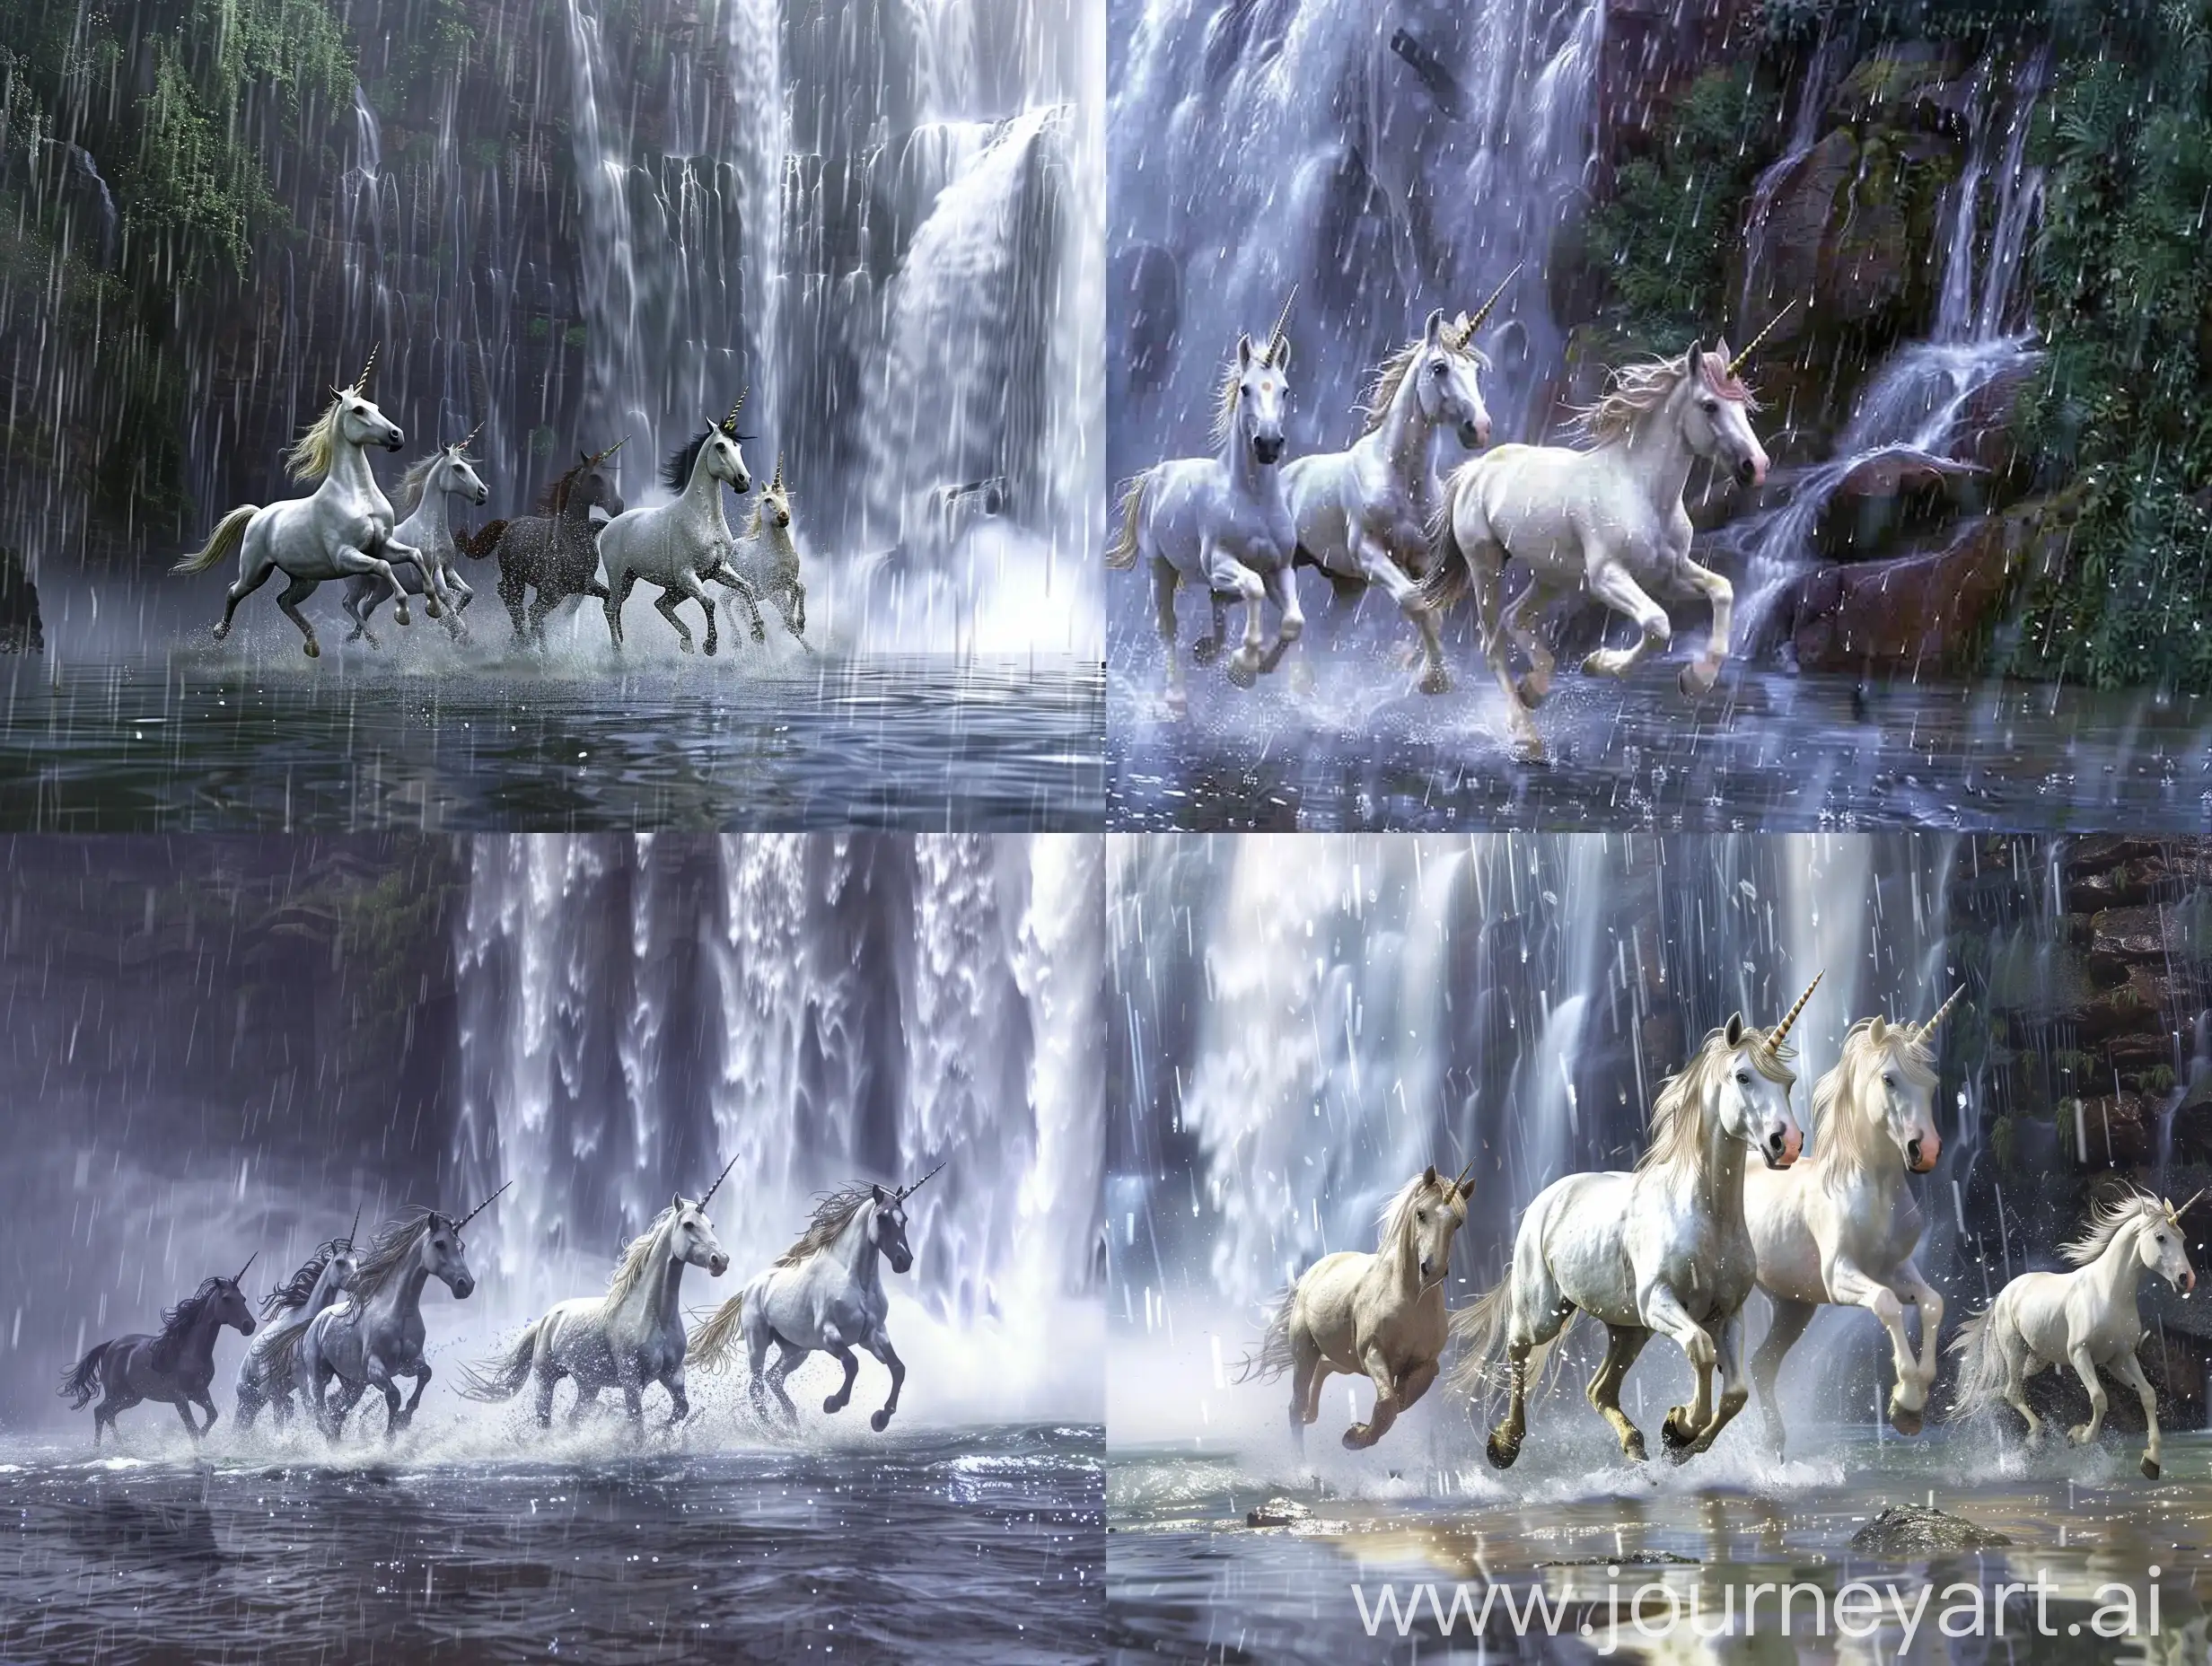 Graceful-Unicorns-Galloping-in-Rain-near-Waterfall